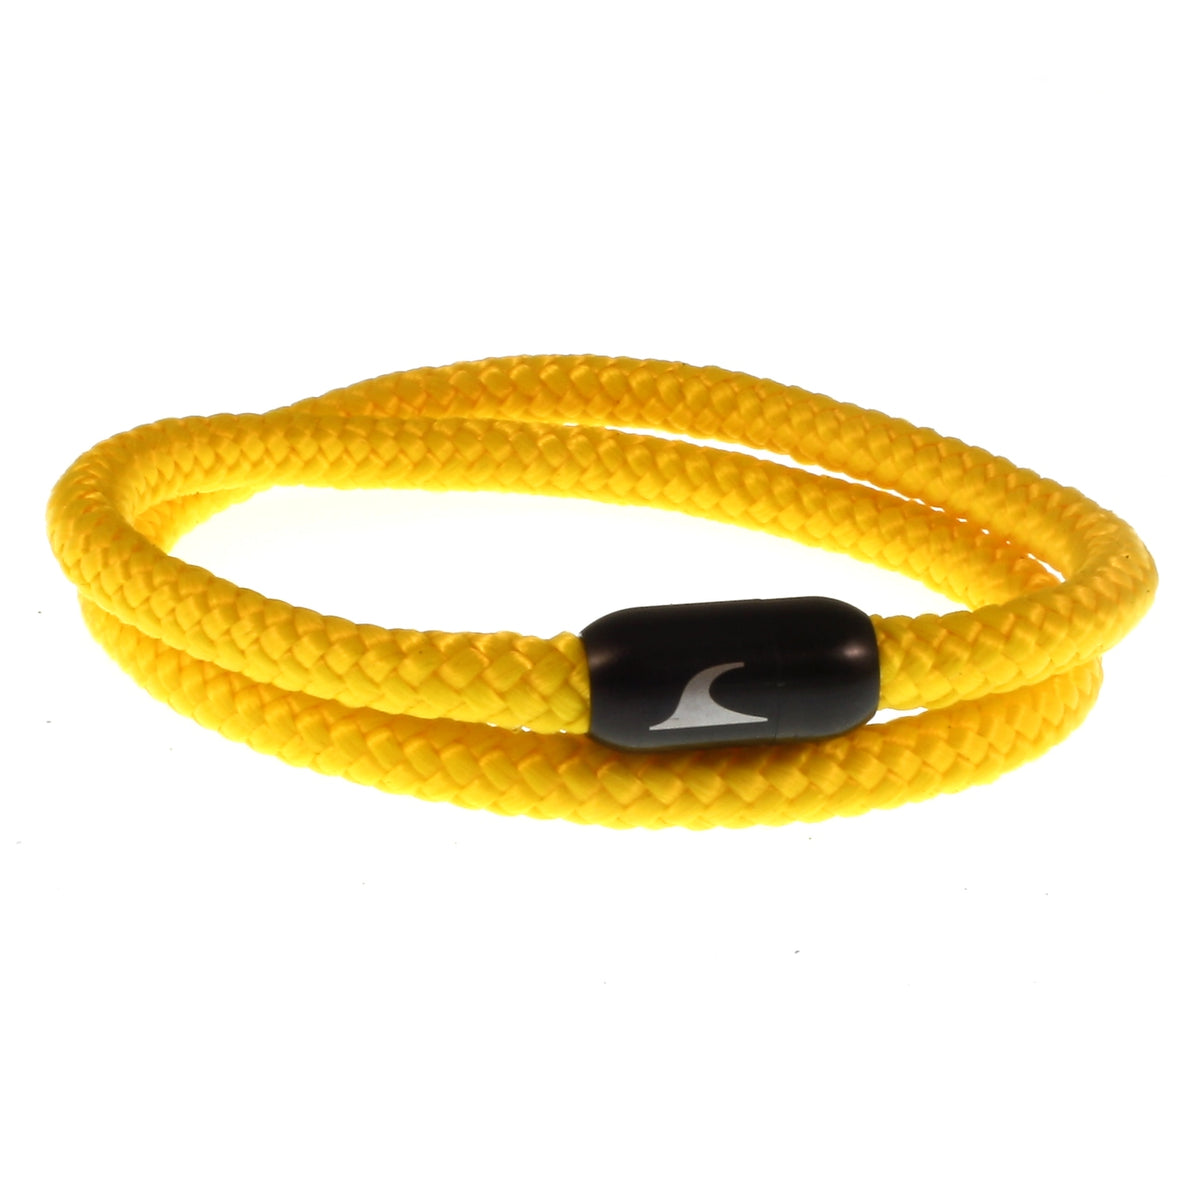 Herren-Segeltau-Armband-damen-hawaii-gelb-schwarz-Edelstahlverschluss-vorn-wavepirate-shop-st